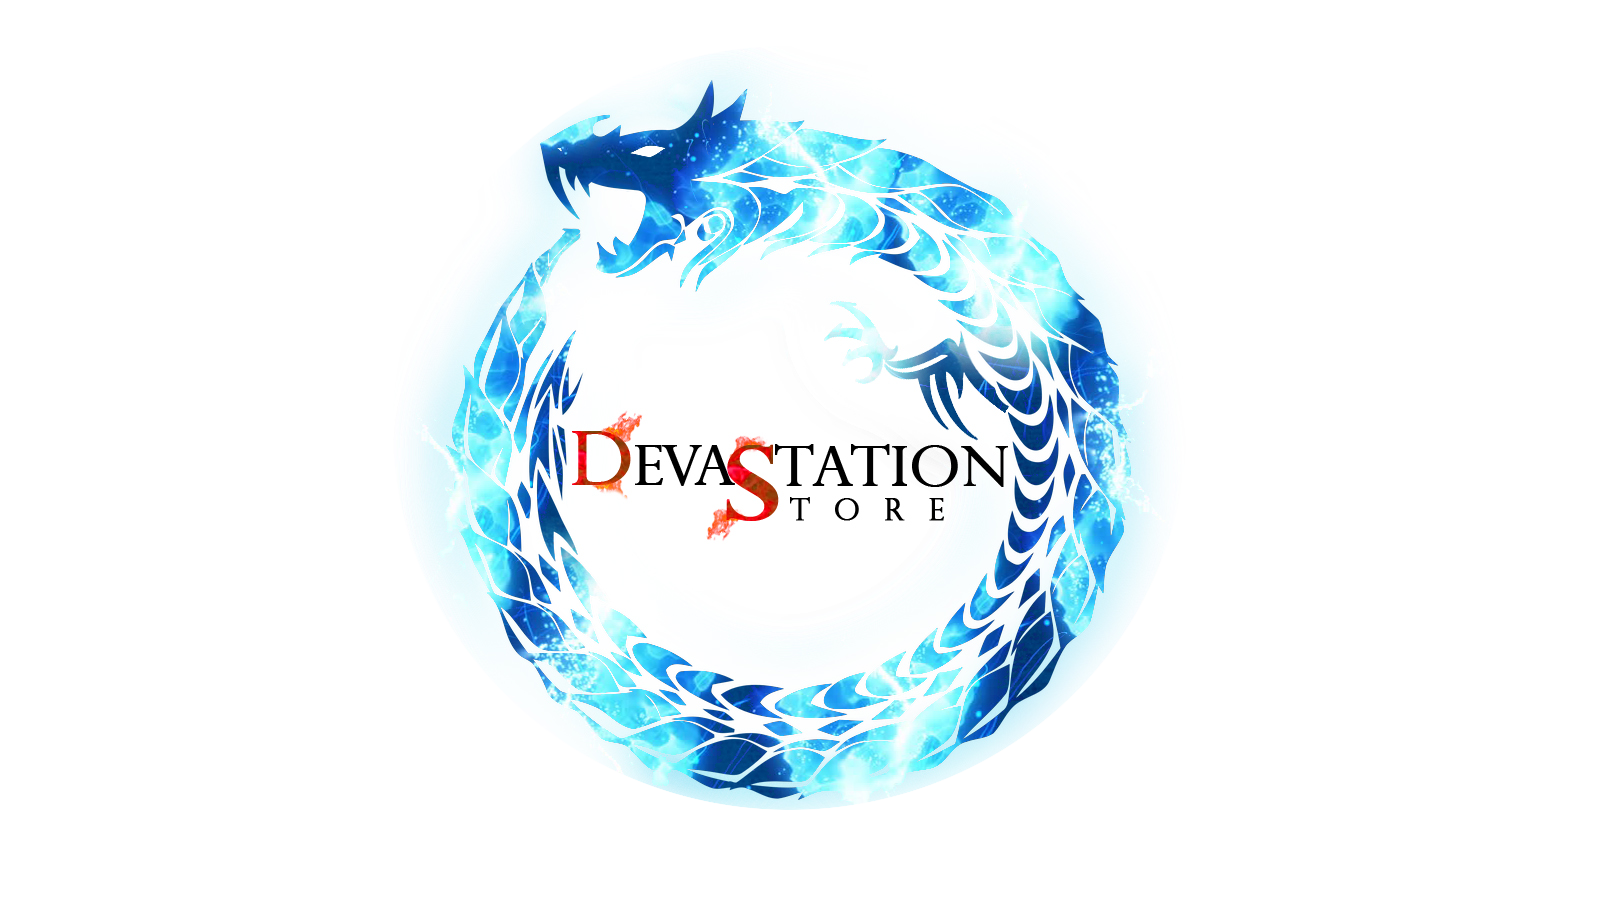 Awo - Devastation Store | Devastation Store